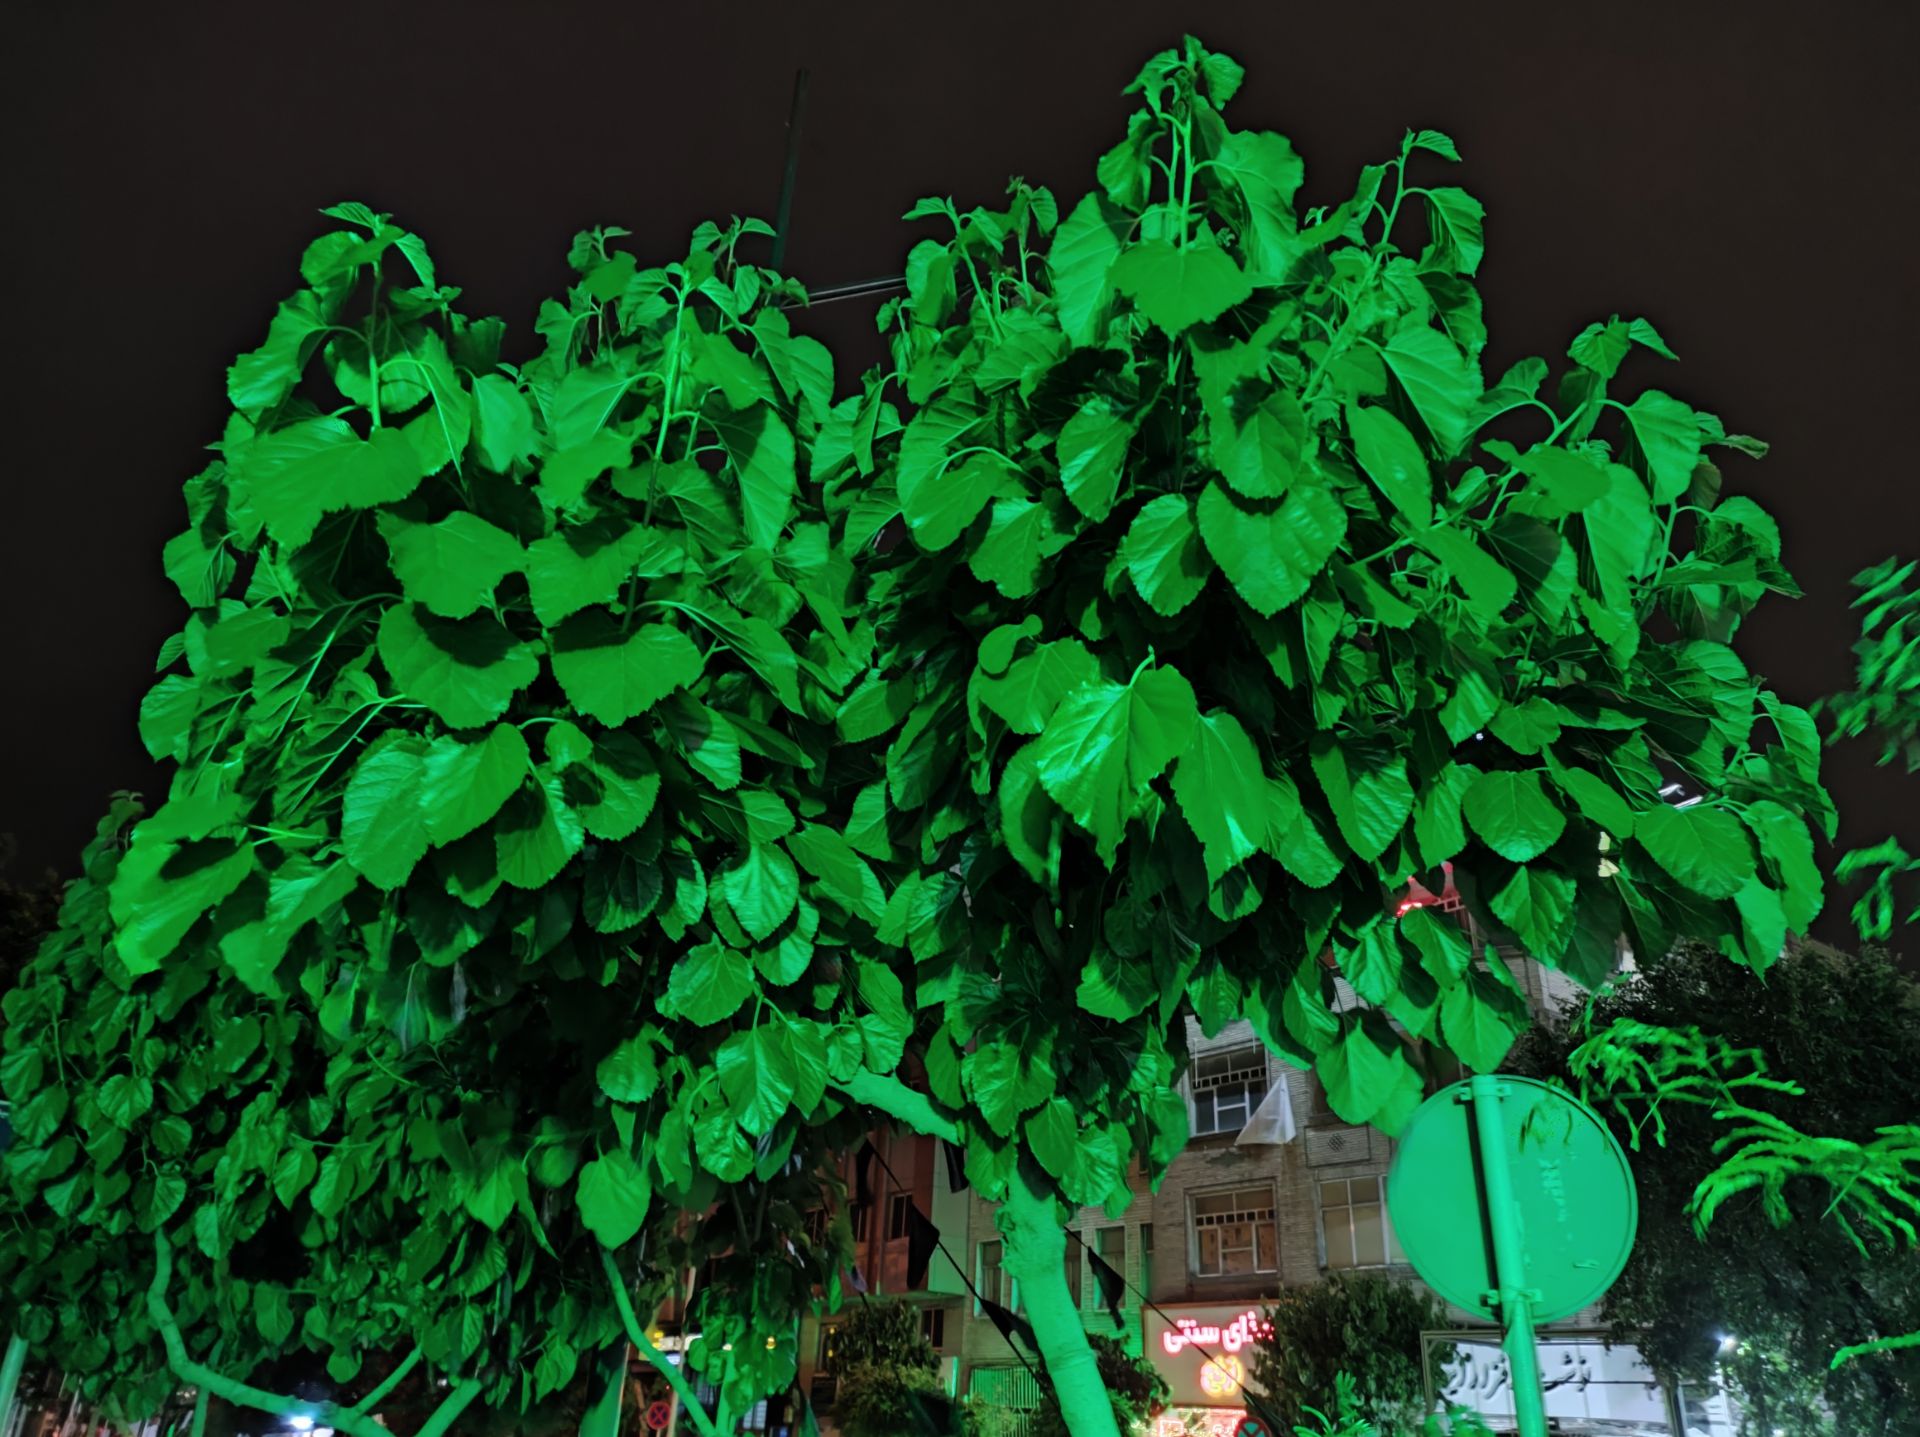 مرجع متخصصين ايران نمونه عكس دوربين اصلي مي ۱۱ لايت در محيط تاريك - برگ هاي درختي در خيابان گلبرگ